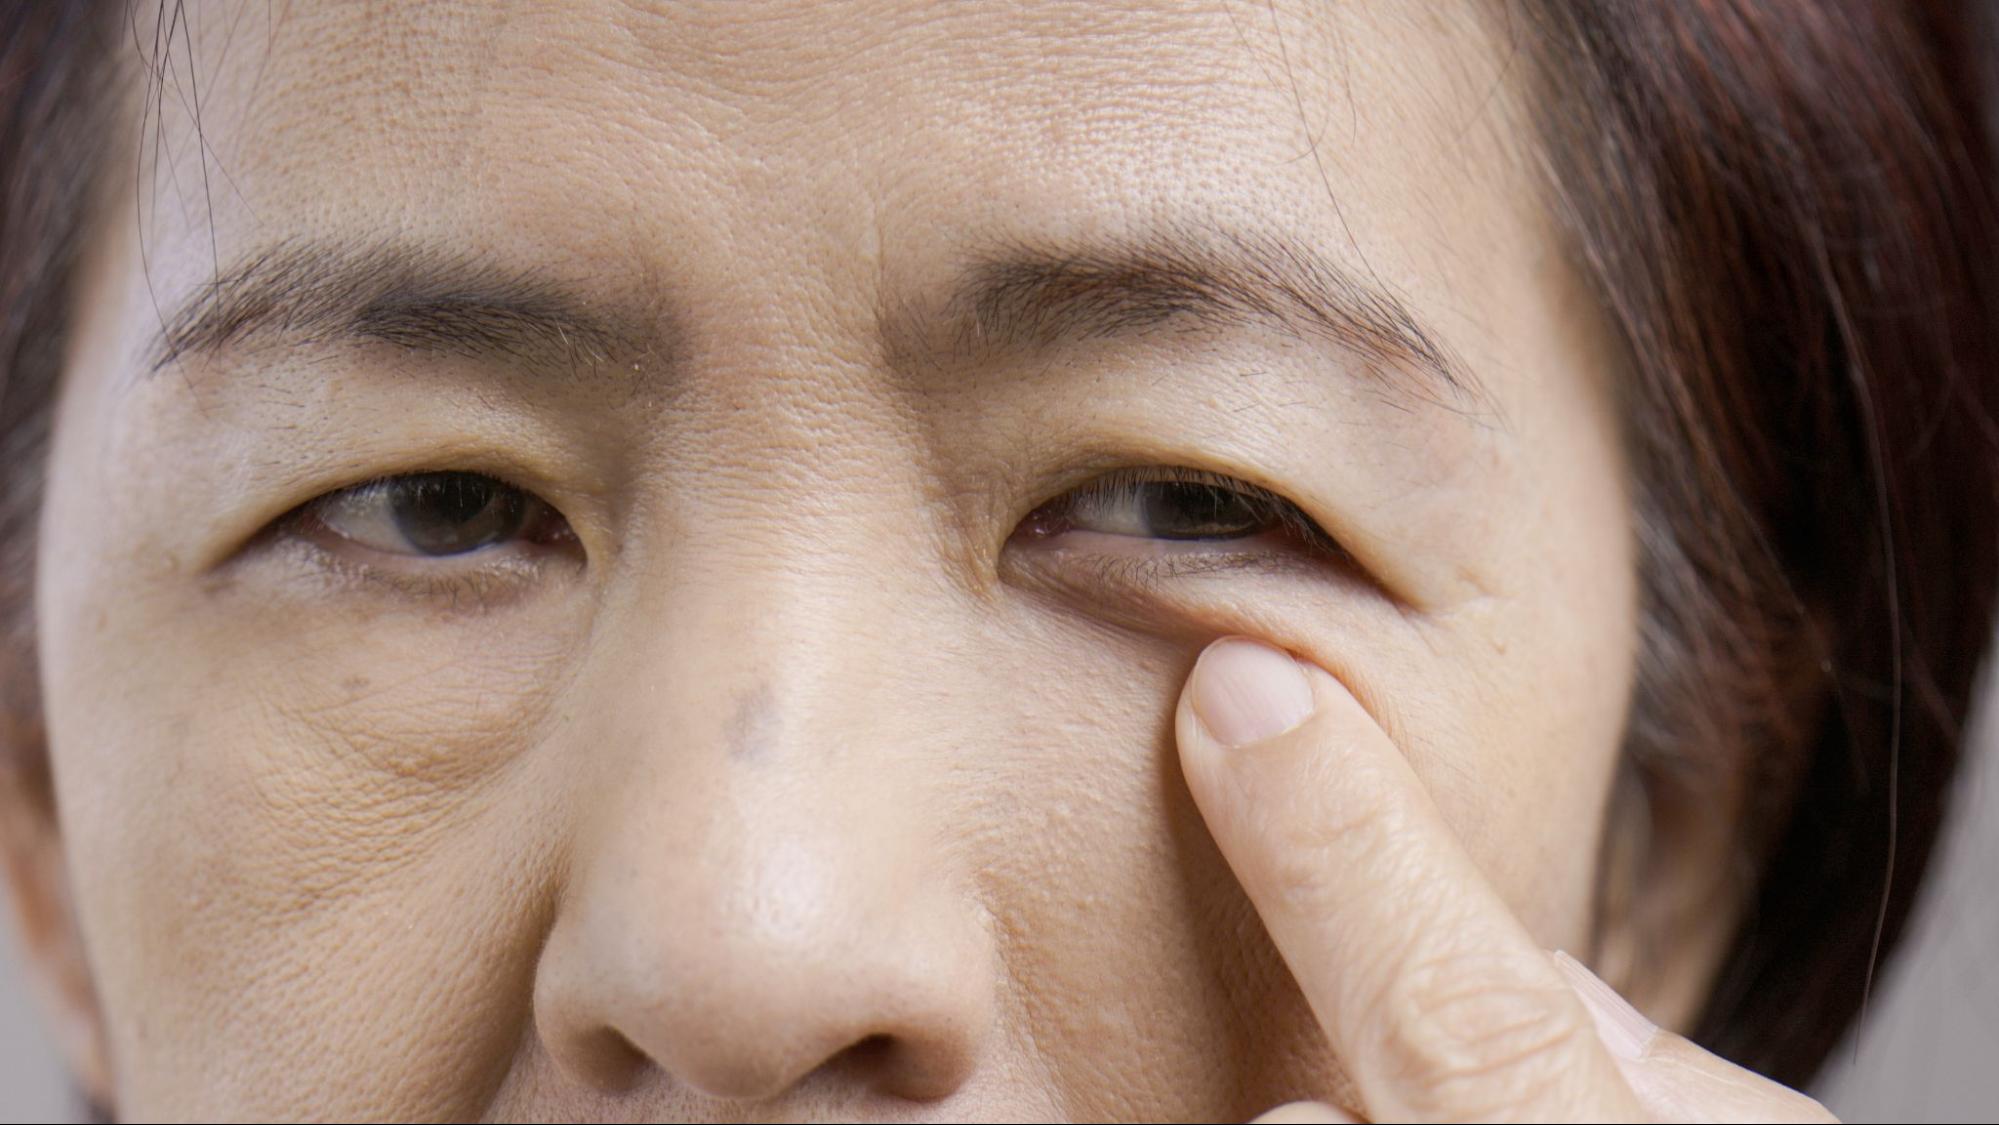 突然片目だけが眼瞼下垂になる原因は病気の可能性も